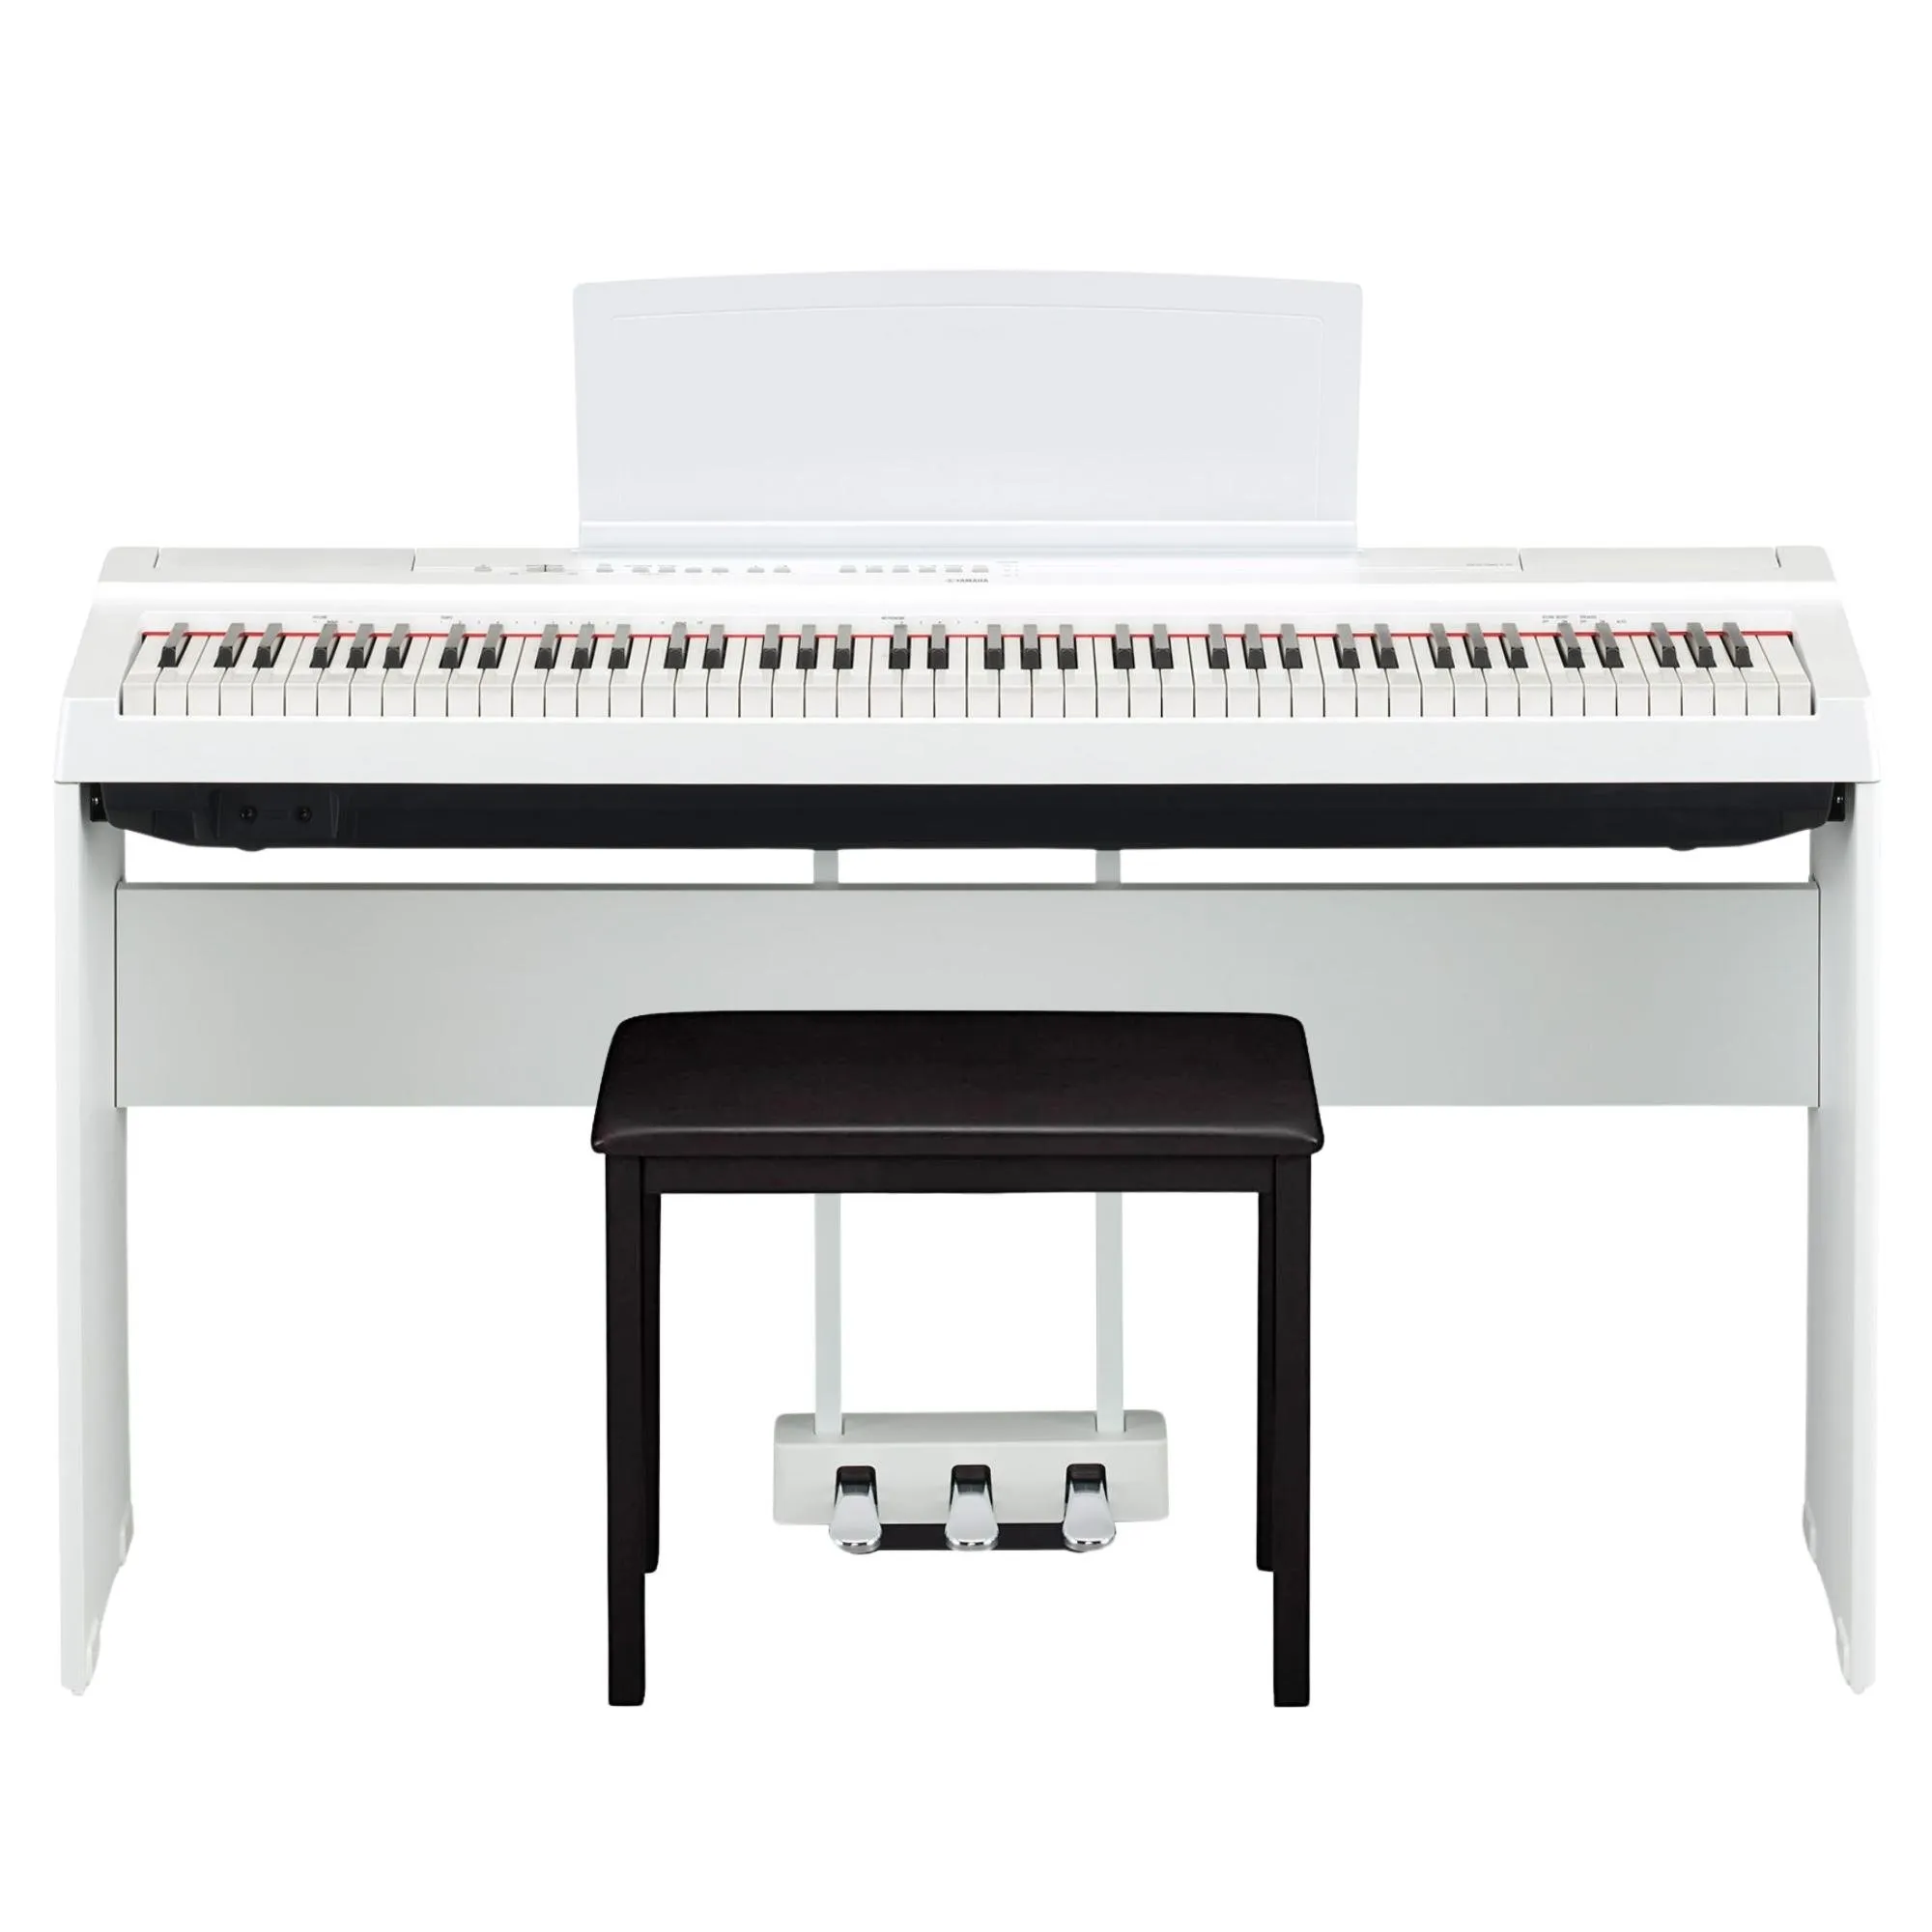 Kit Piano Digital YAMAHA P125 Branco + Acessórios por 6.319,00 à vista no boleto/pix ou parcele em até 12x sem juros. Compre na loja Mundomax!